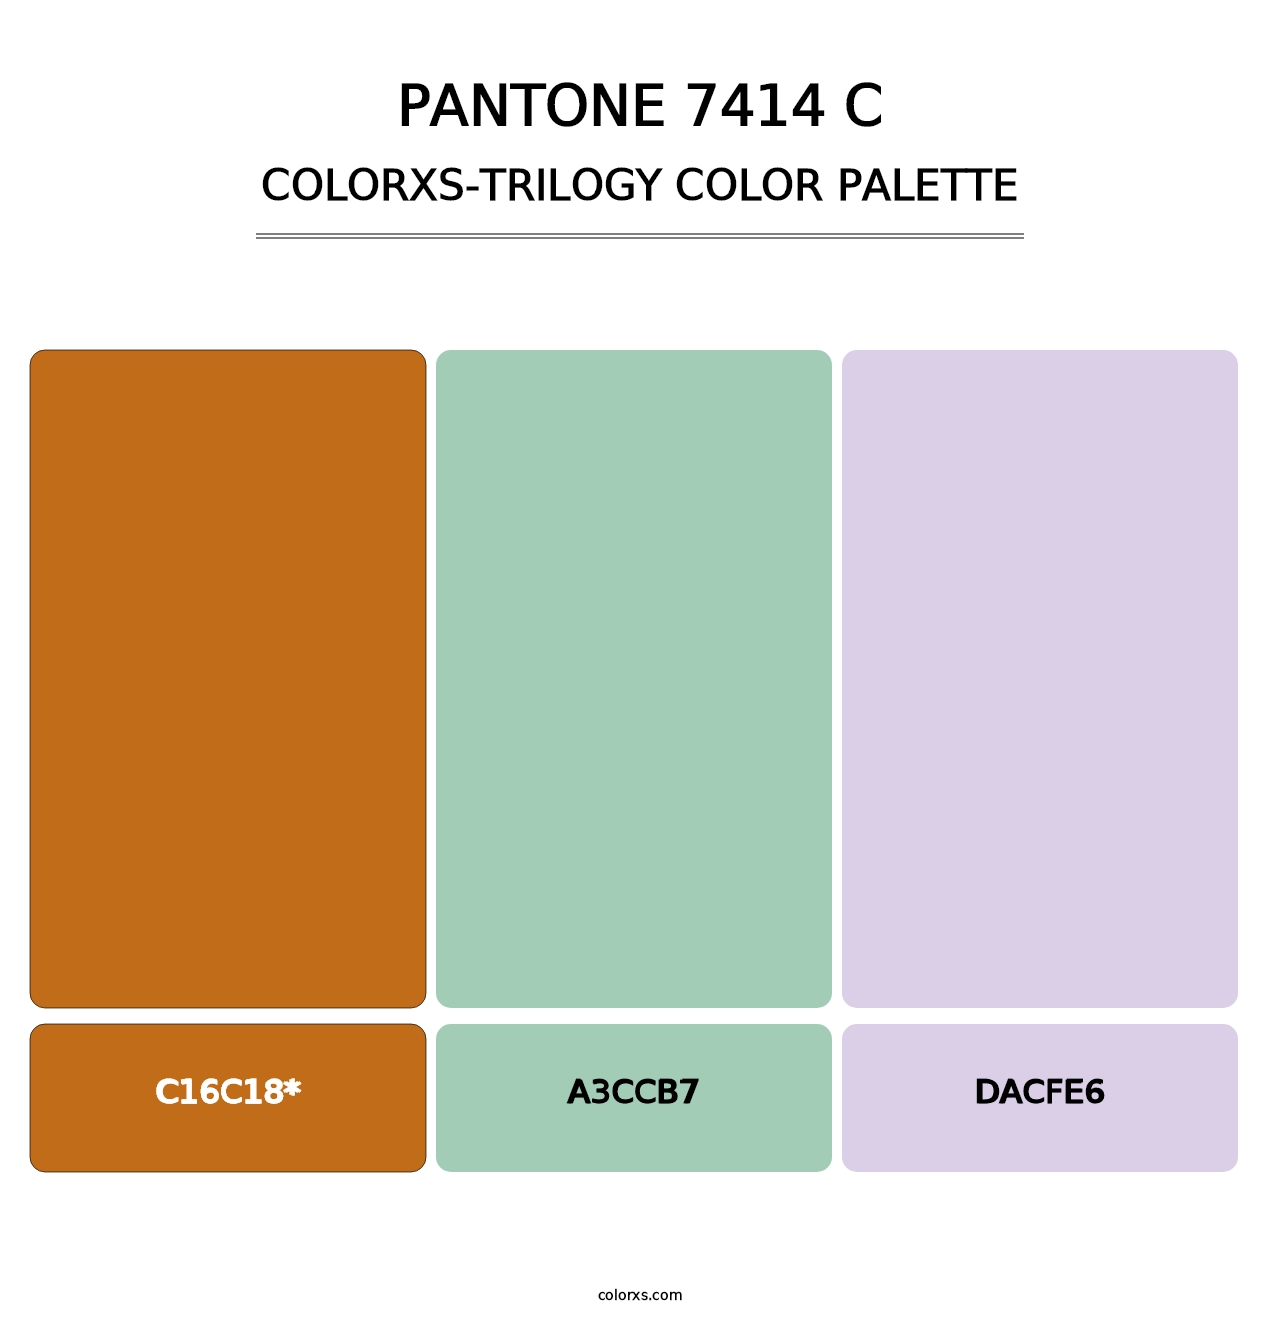 PANTONE 7414 C - Colorxs Trilogy Palette